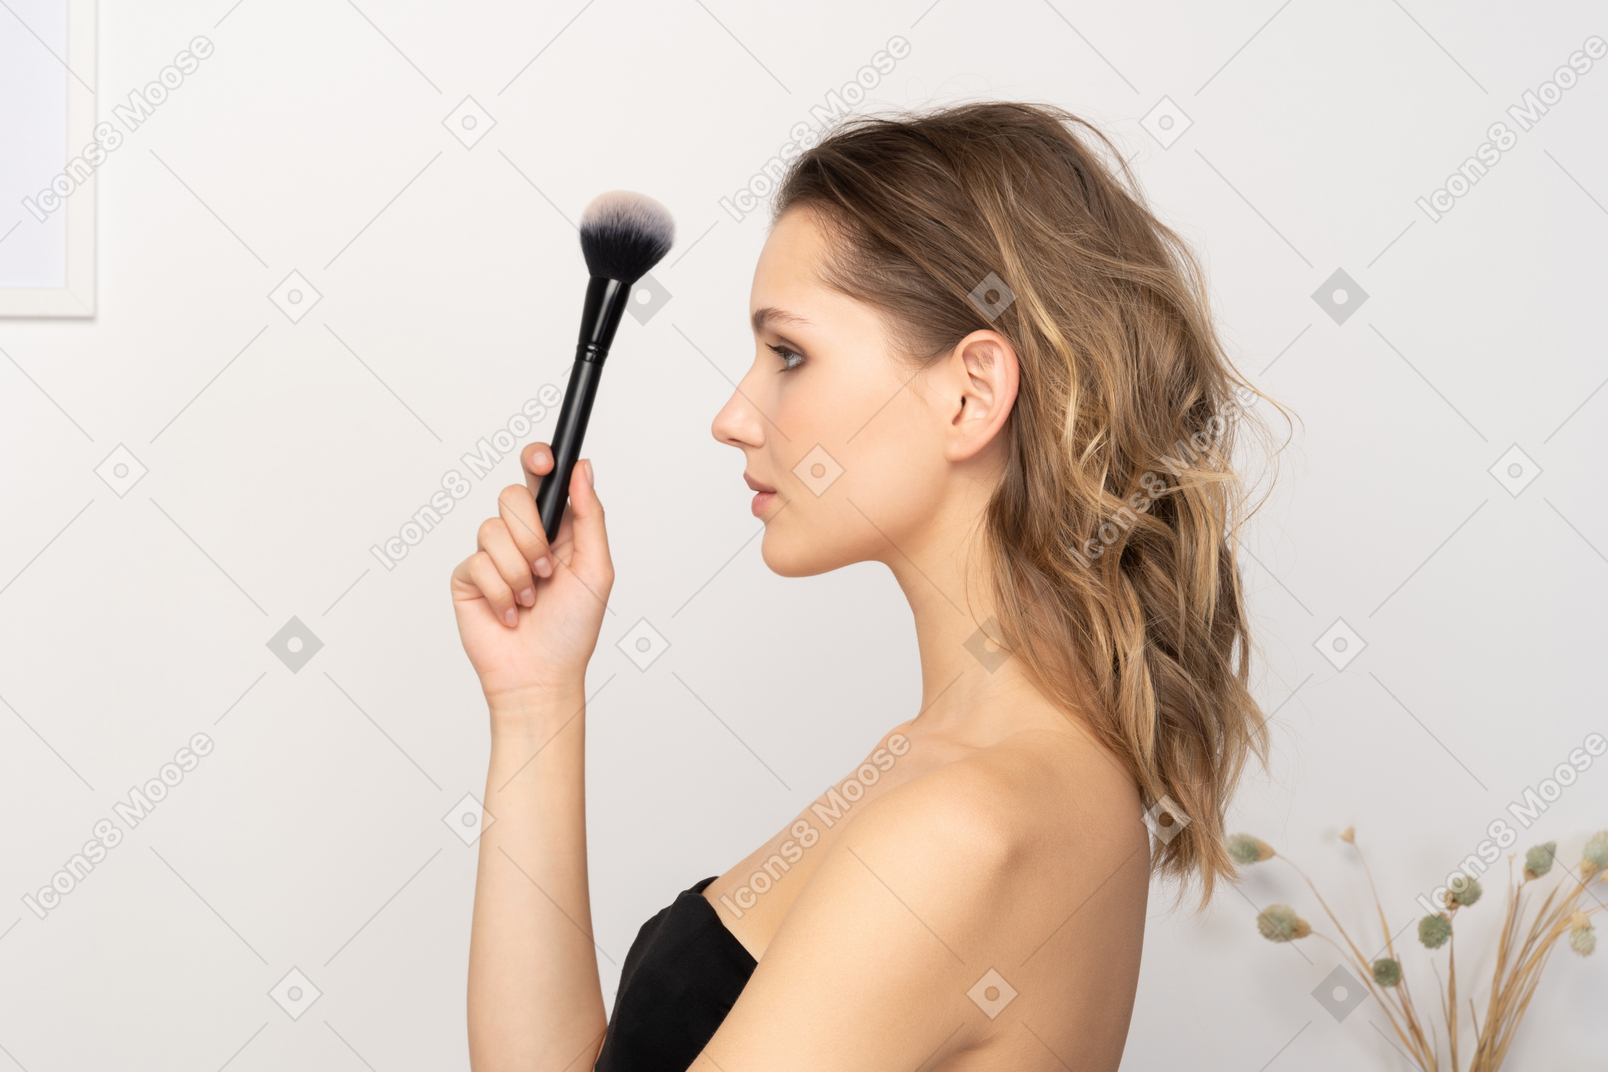 Vista lateral de uma jovem sensual segurando um pincel de maquiagem